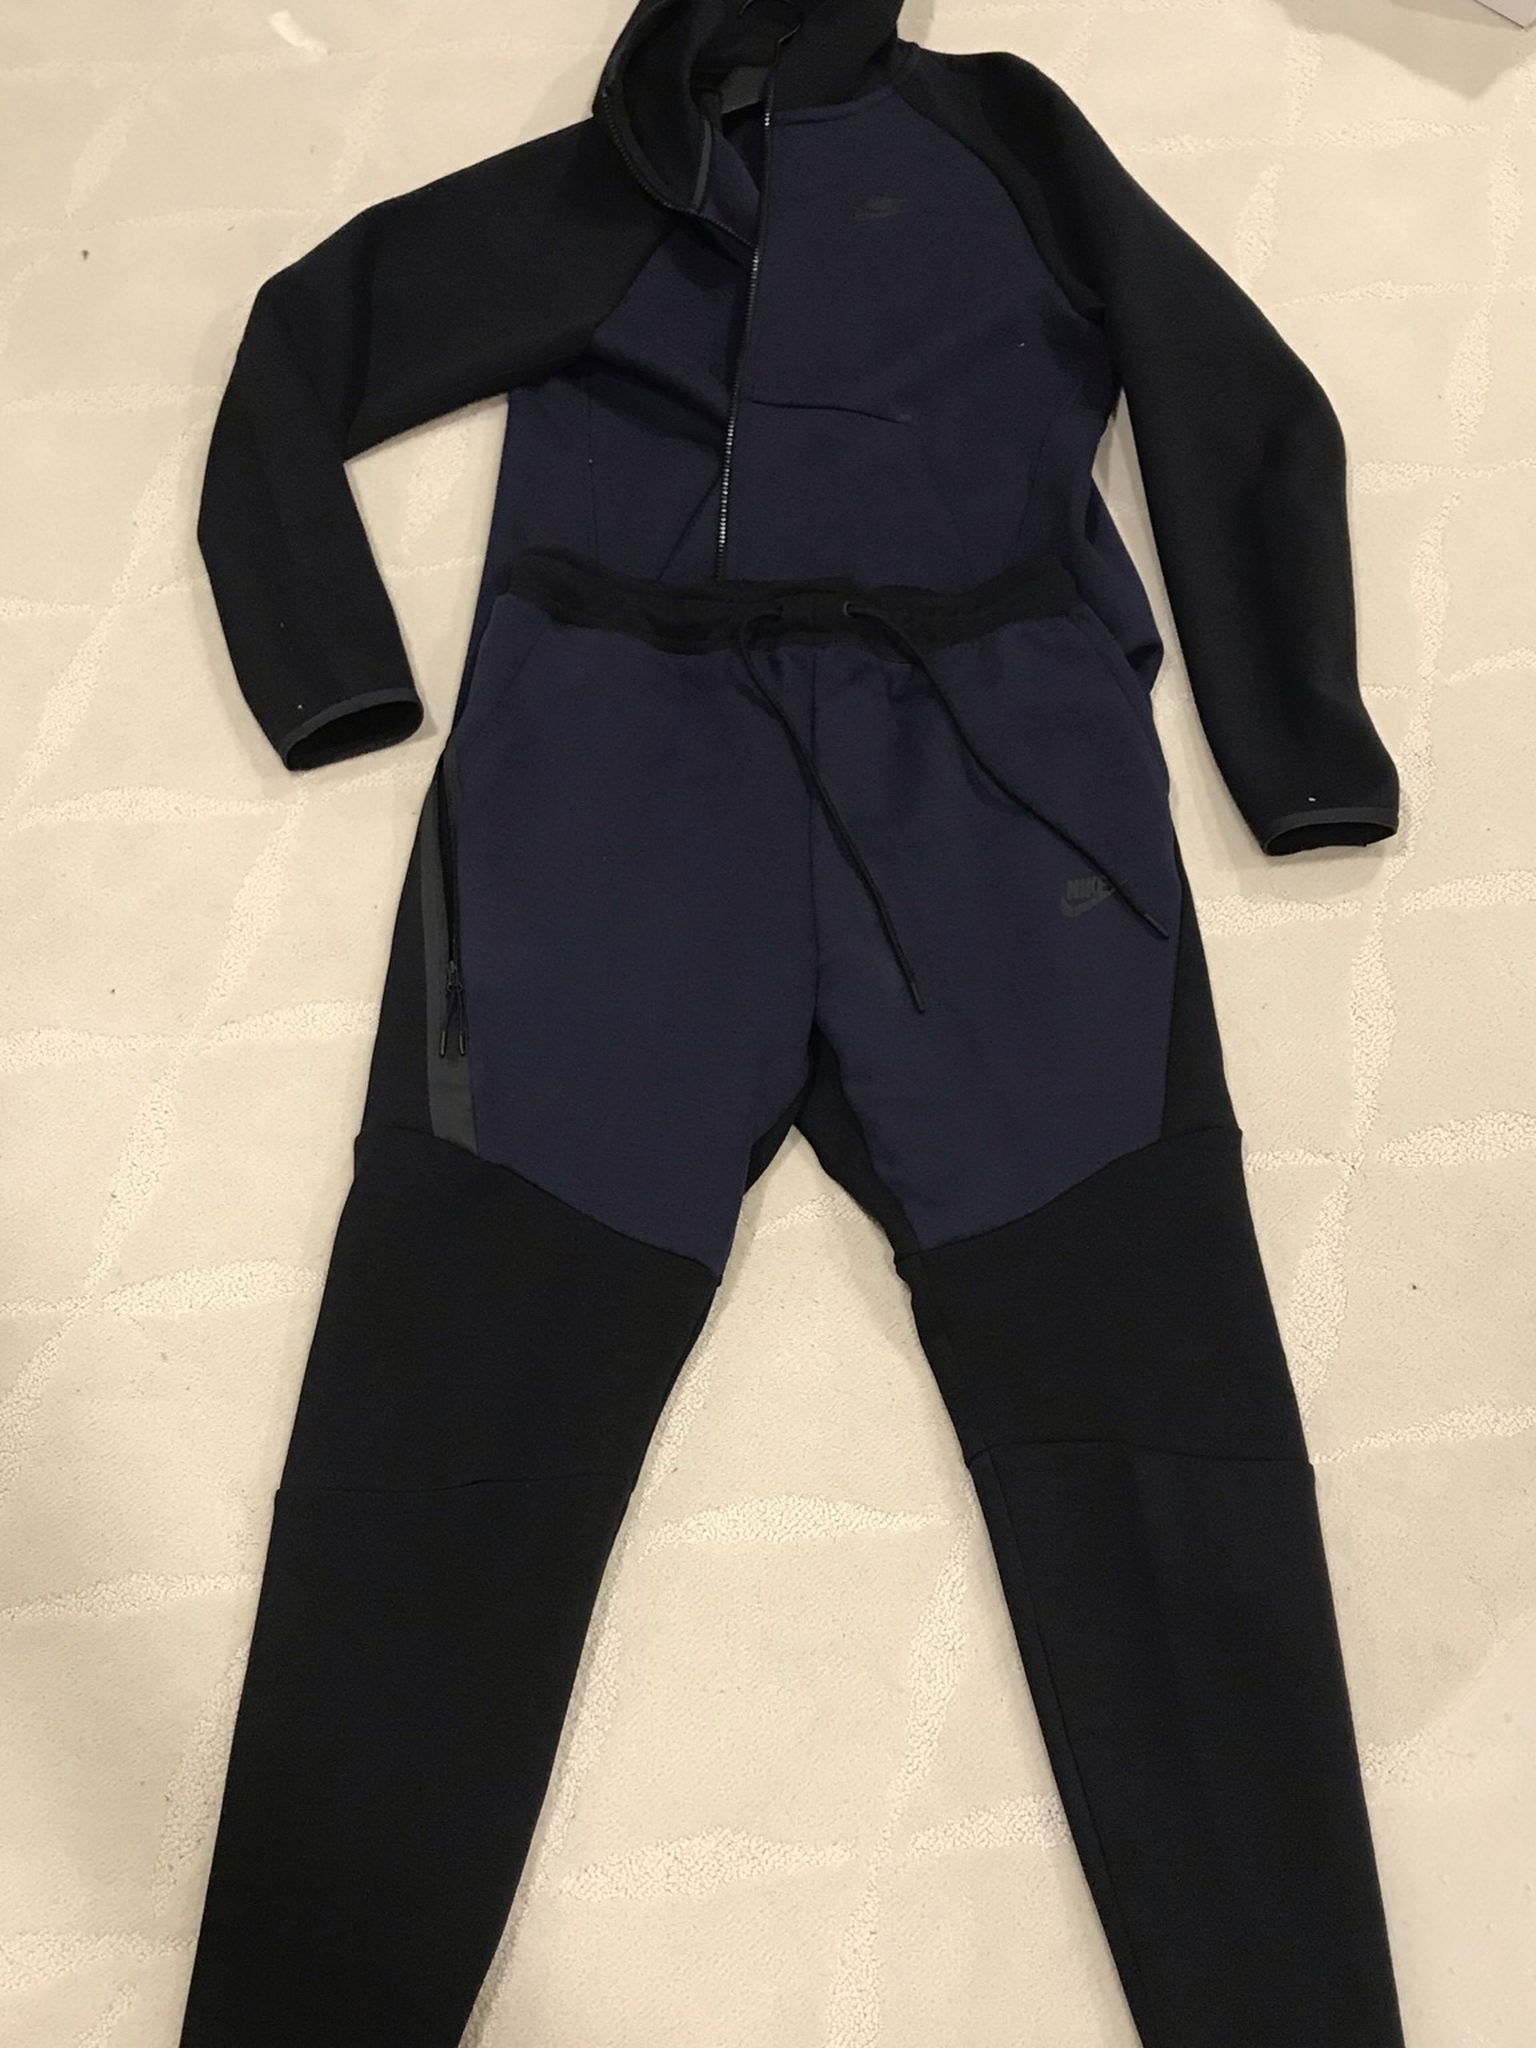 Nike Tech Fleece Zip Hoodie Jacket Joggers Sweat Suit Men’s Medium Black Navy